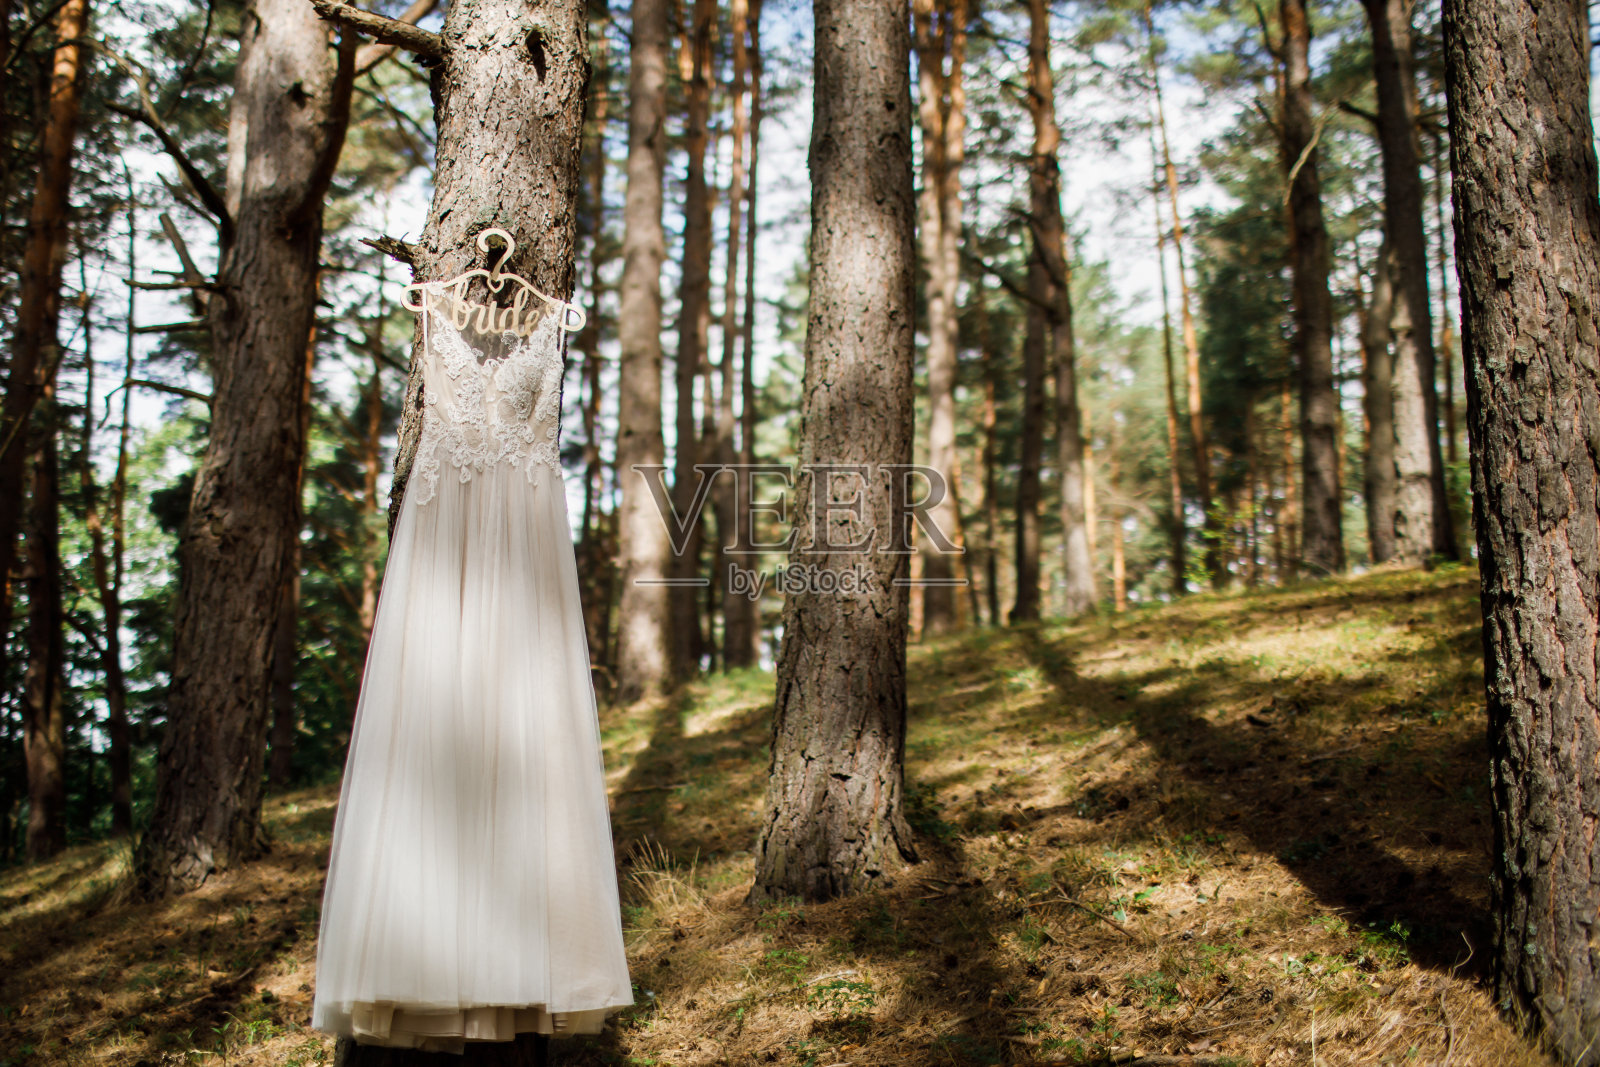 婚纱摄影:蕾丝婚纱挂在一棵常青树上照片摄影图片